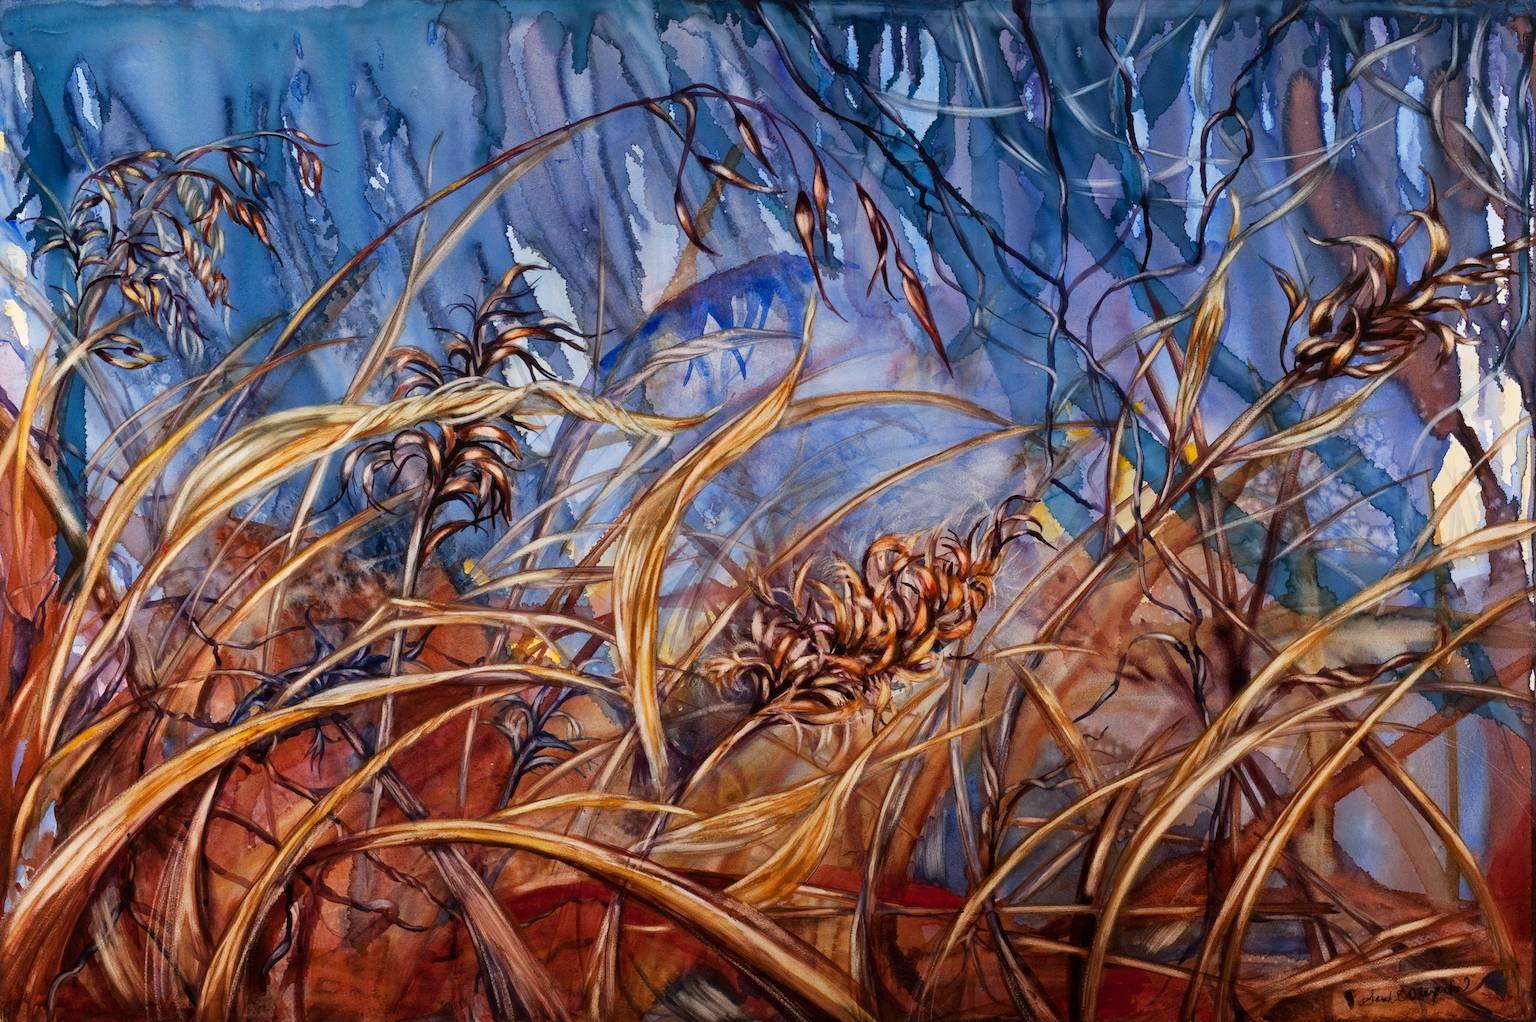 Sarah Alexander Landscape Painting - "Allow", landscape, marsh grasses, blue, warm tones, watercolor painting